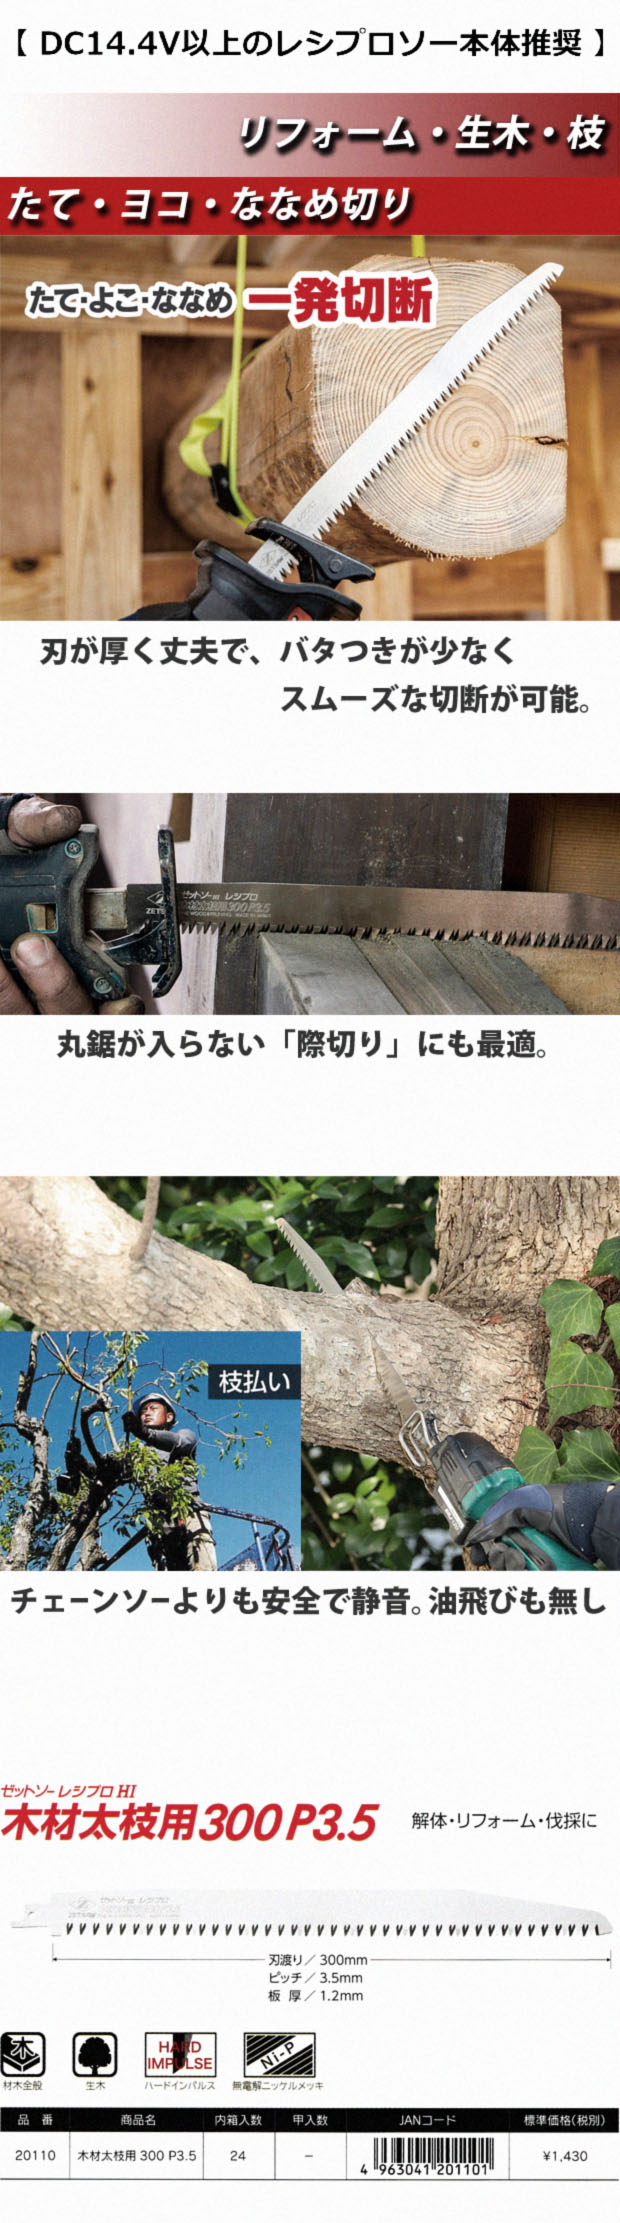 ゼットソー レシプロhi木材太枝用300 P3.5